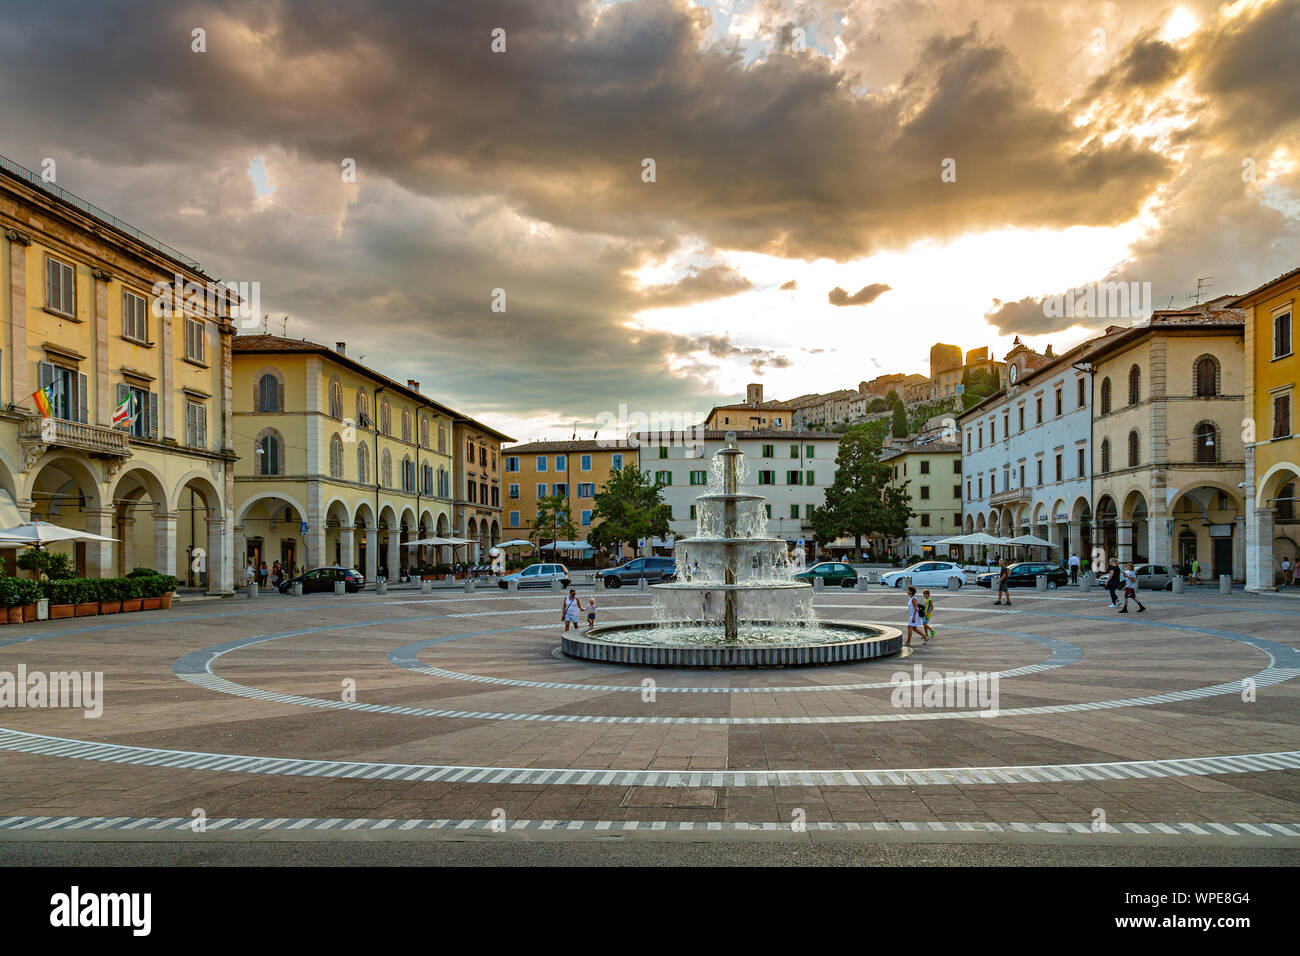 Plaza Arnolfo Di Cambio, Colle Val D'elsa, toscana, Italia Foto de stock